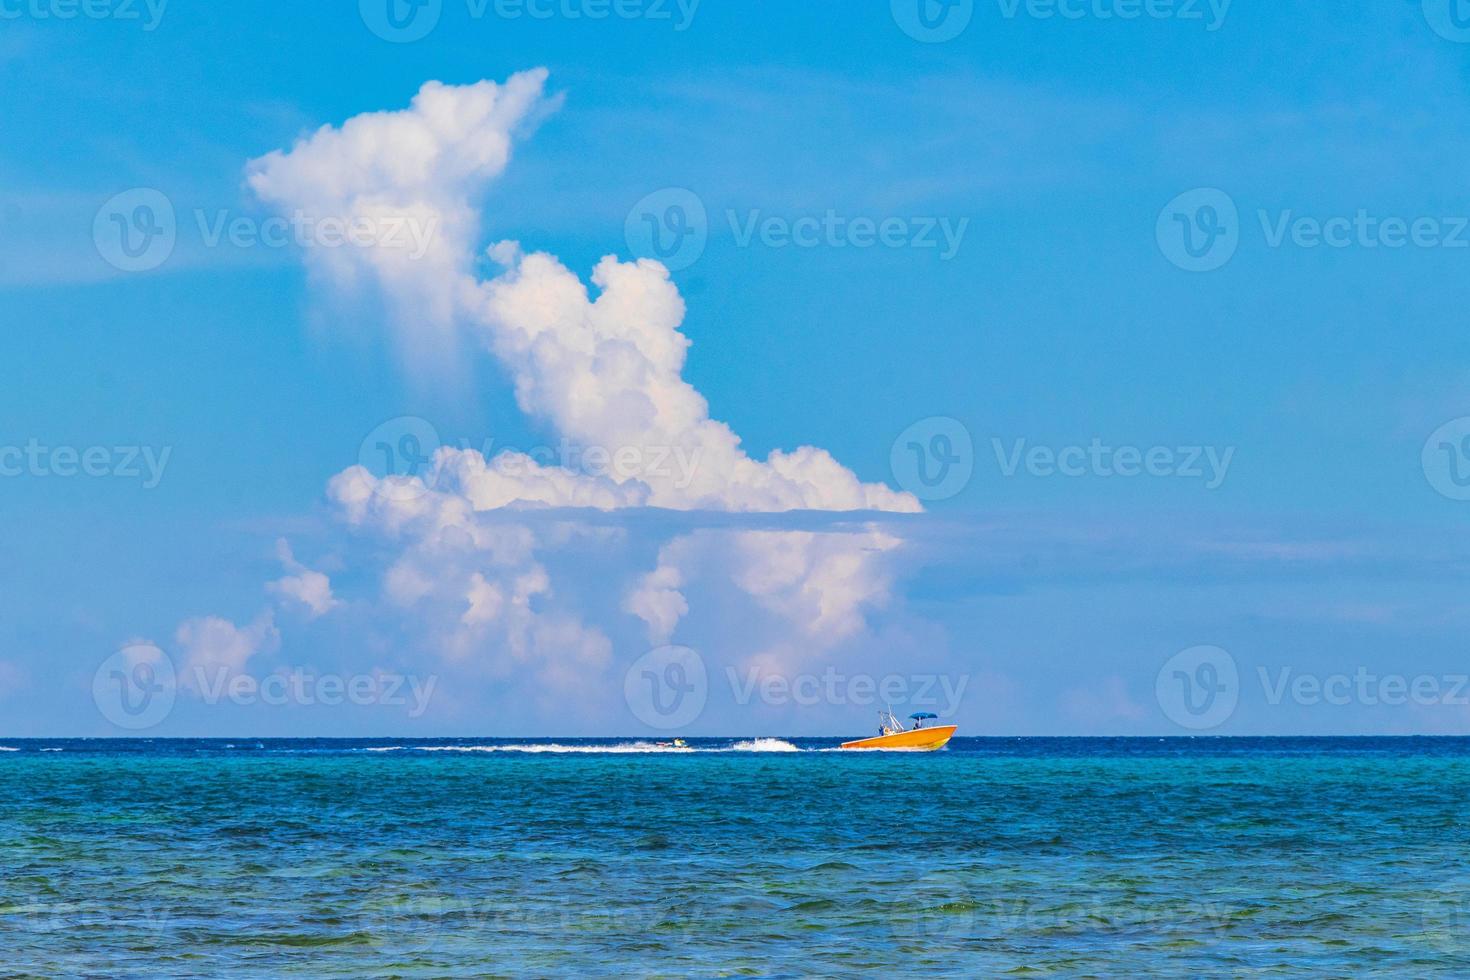 barcos yates barco embarcadero playa en playa del carmen mexico. foto